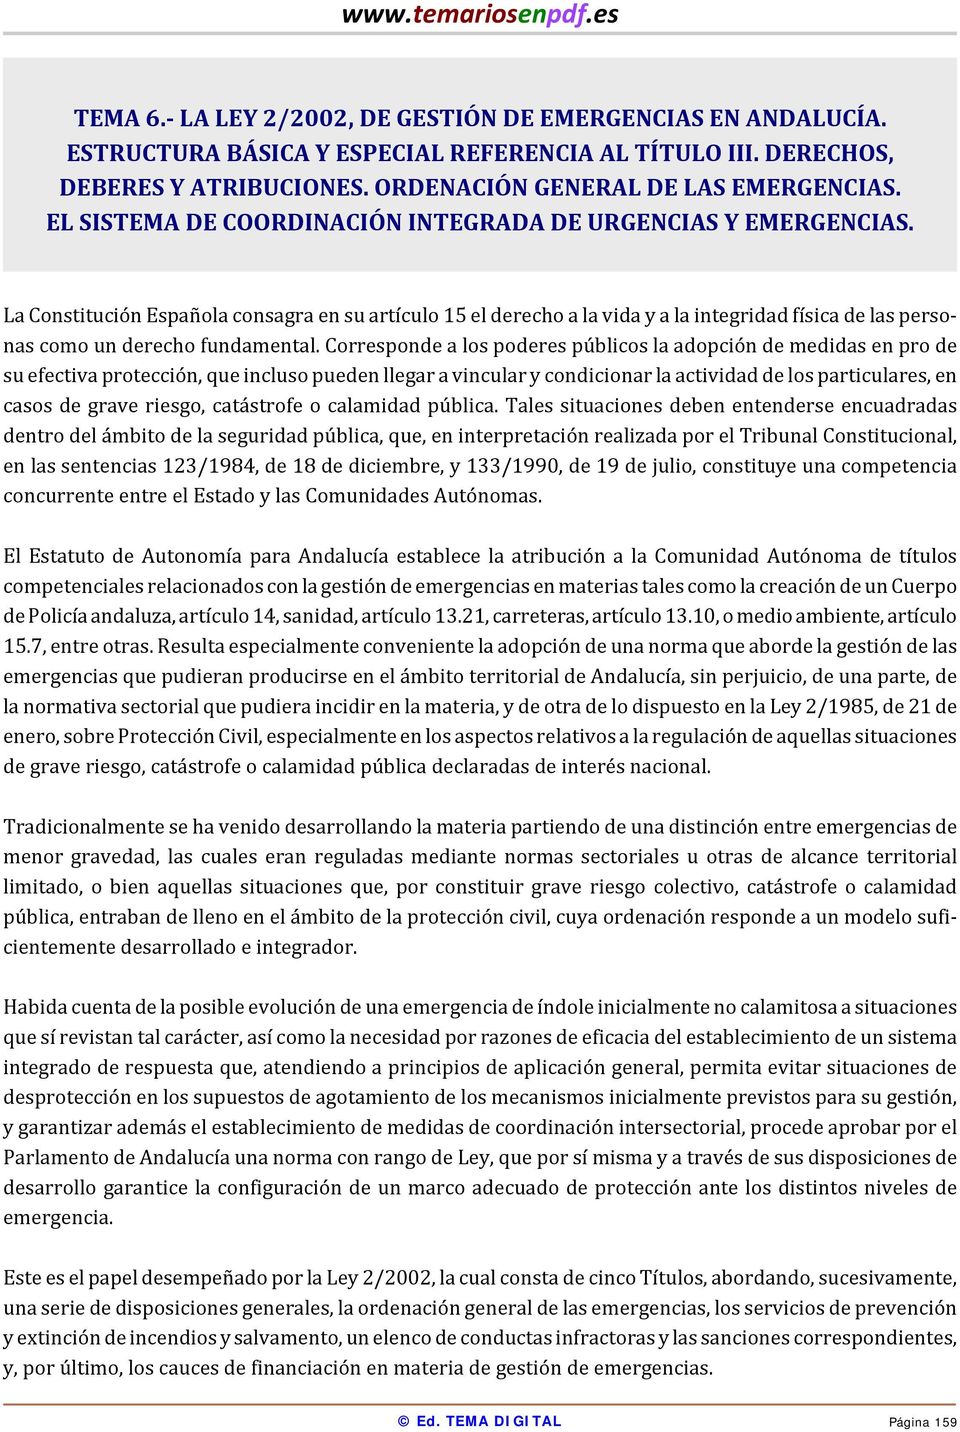 La Constitución Española consagra en su artículo 15 el derecho a la vida y a la integridad física de las personas como un derecho fundamental.